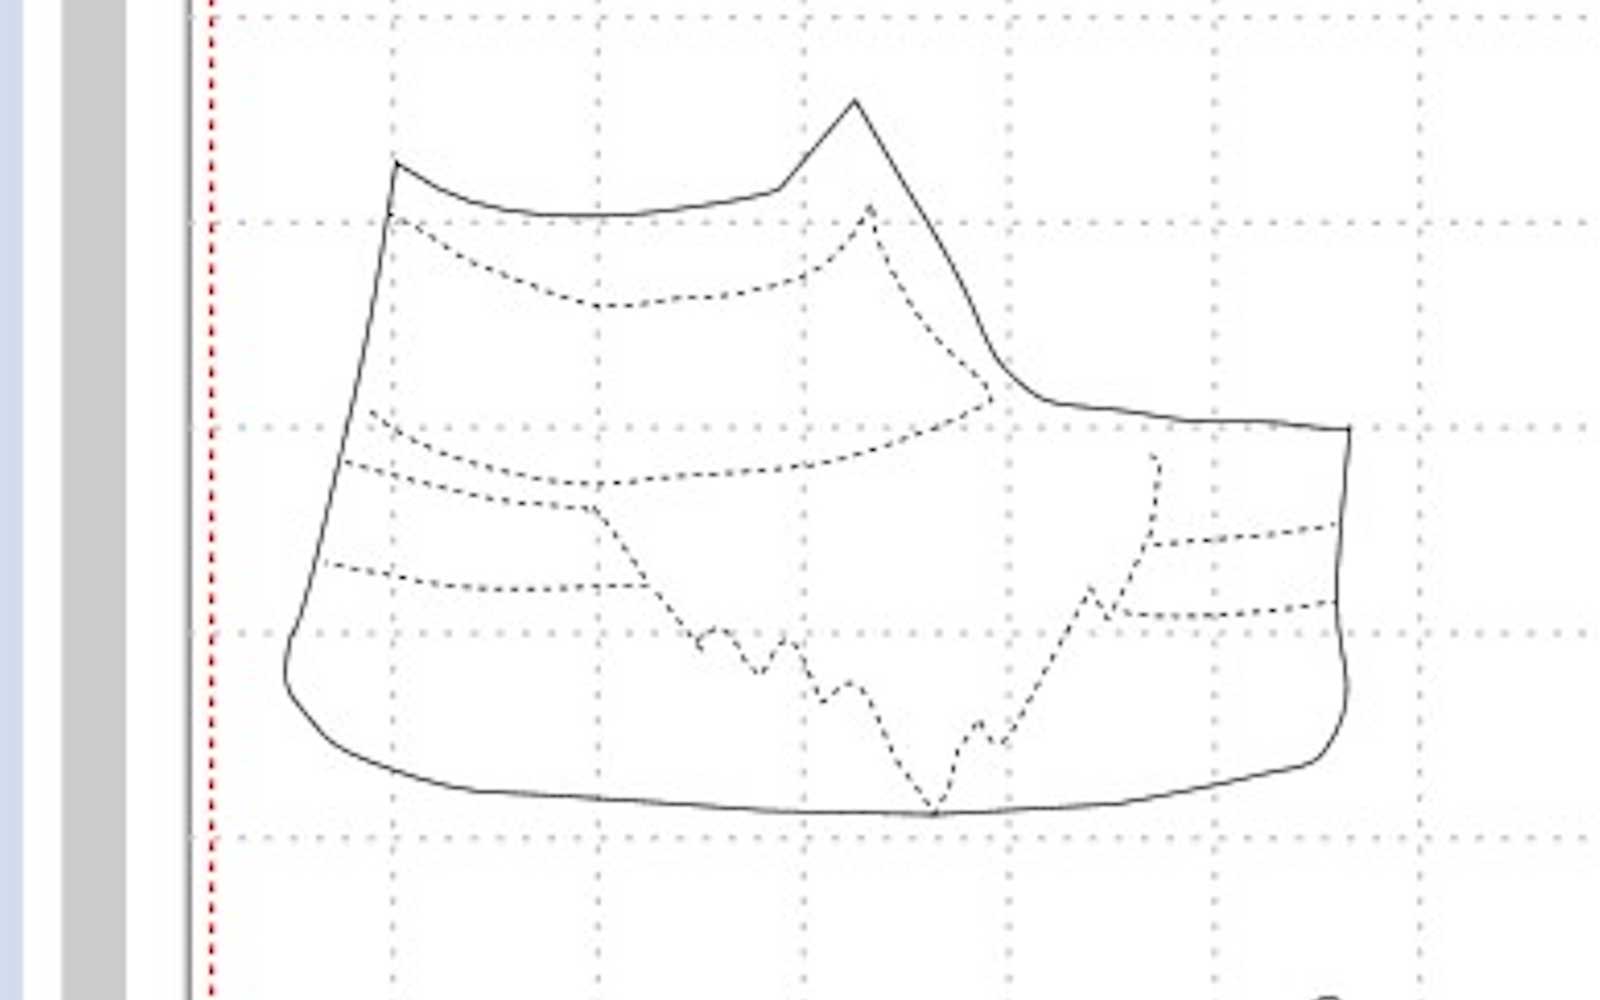 Diagramme avec lignes de placement en pointillés